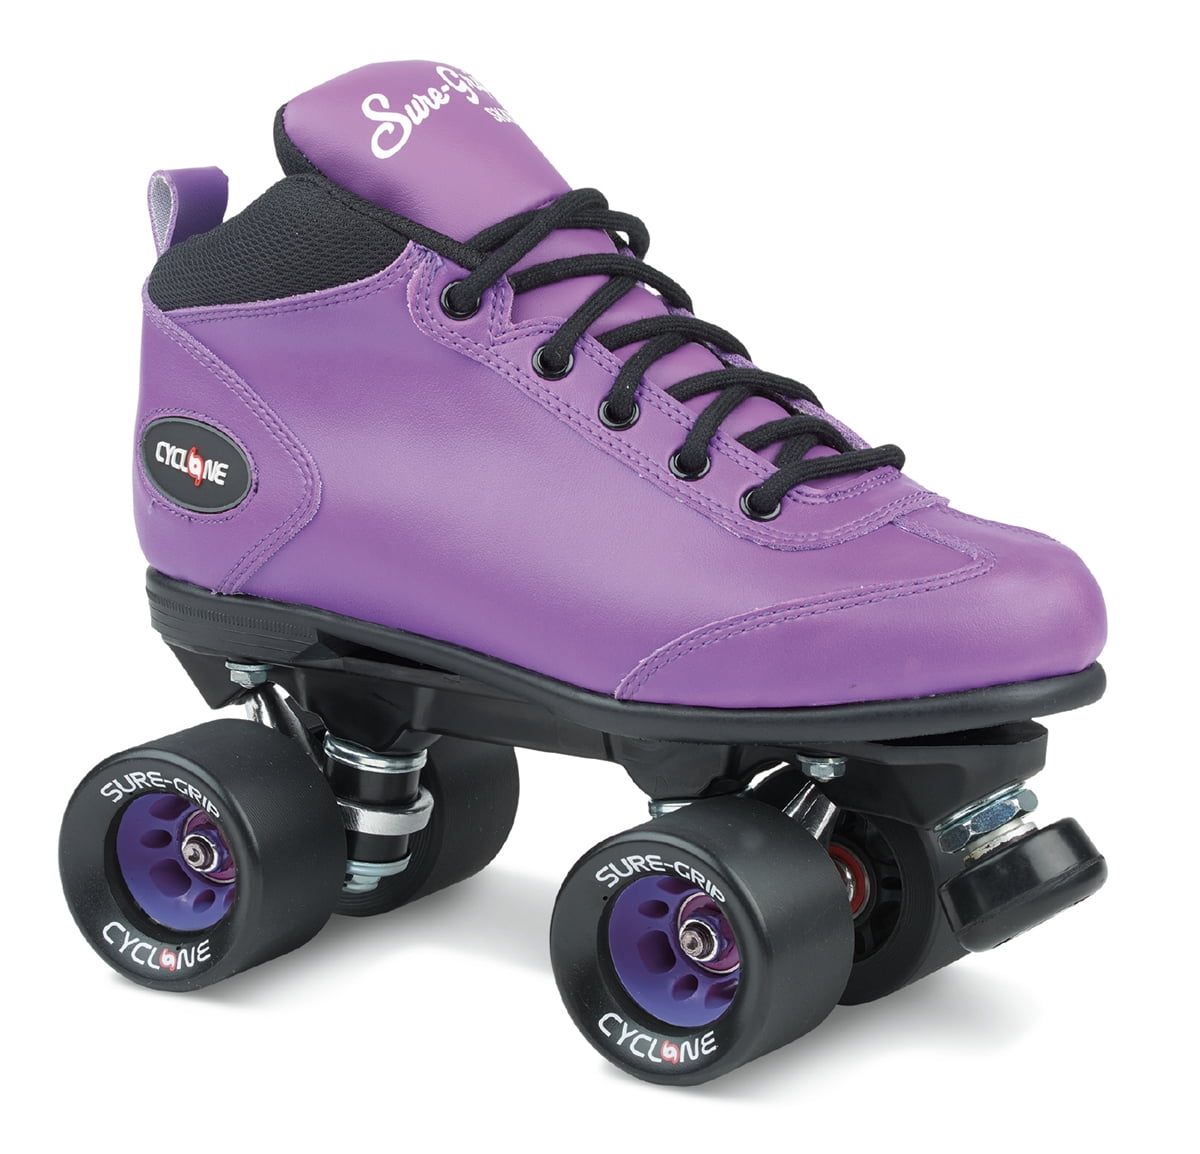 Purple Roller Skate. Ролики California Pro. Ролики California Pro на шнурках. Ролики California Pro описание. Suregrip pro sport отзывы